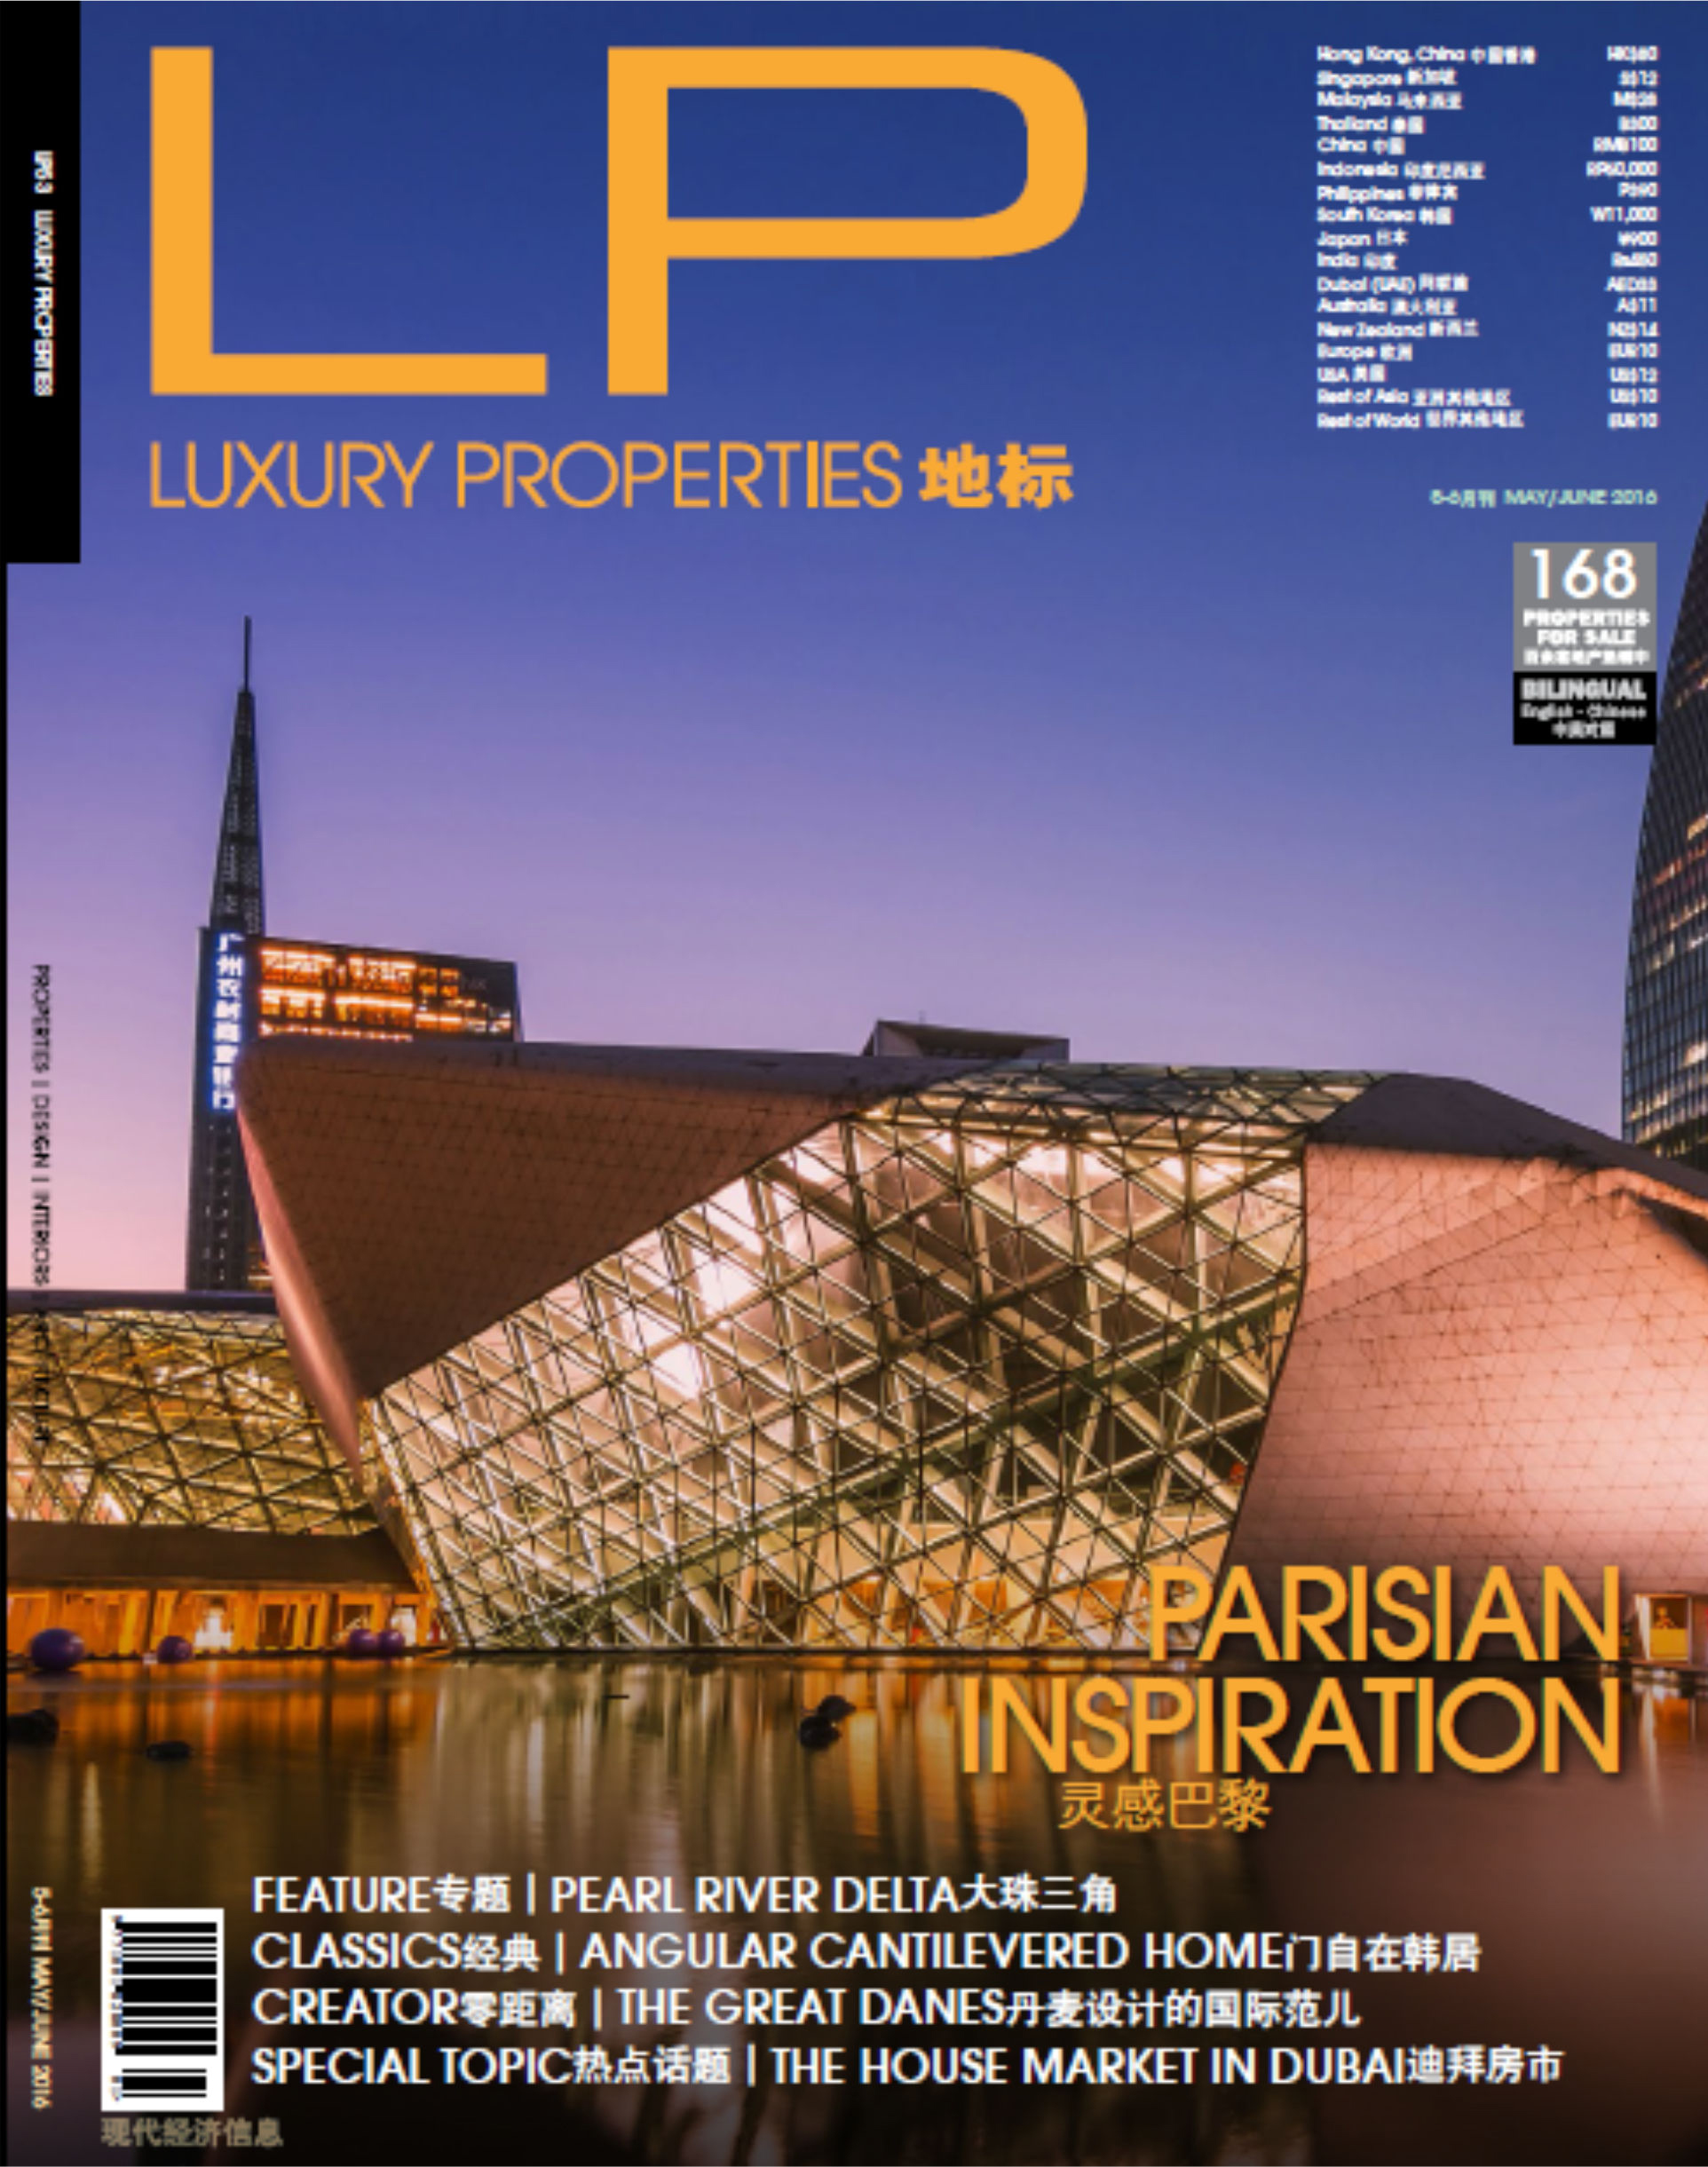 Luxury-properties 01.jpg